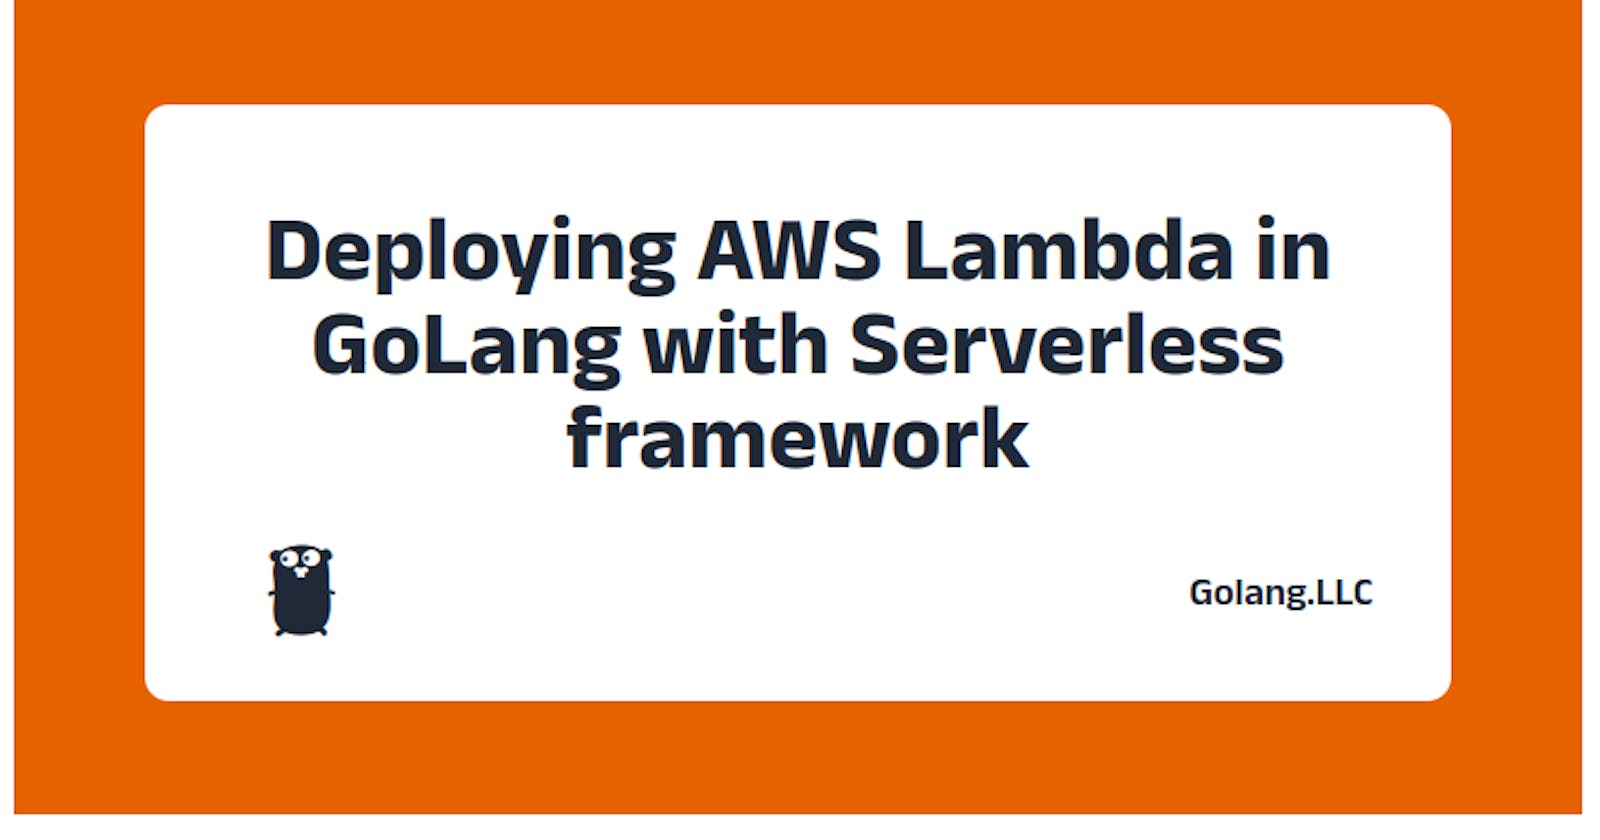 Deploying AWS Lambda in GoLang with Serverless framework